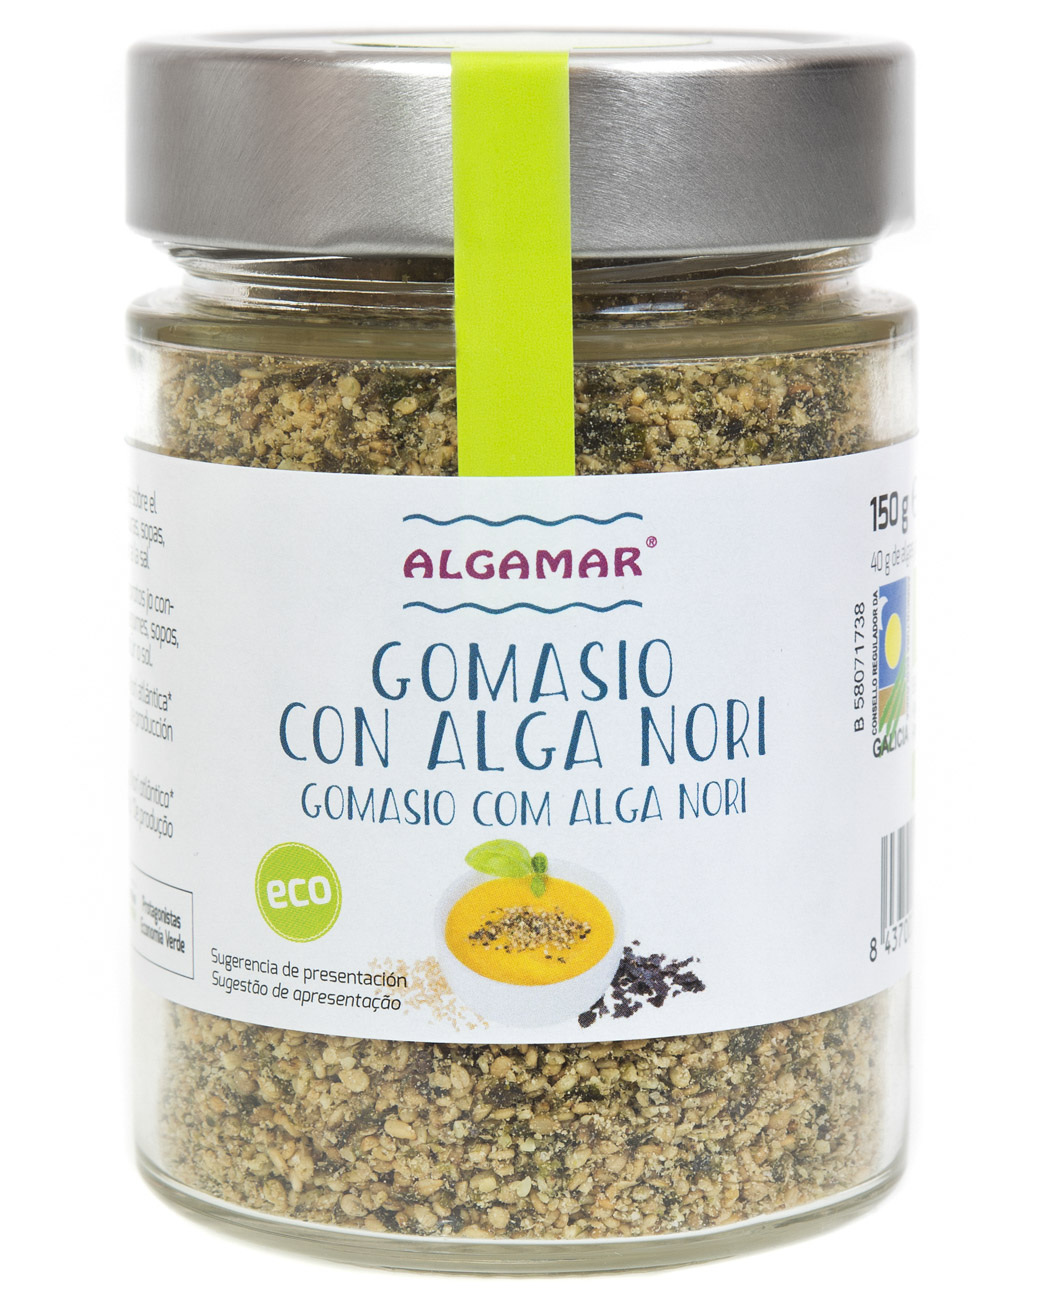 Gomasio con algas - Alga Nori - Algamar - Algas de Galicia